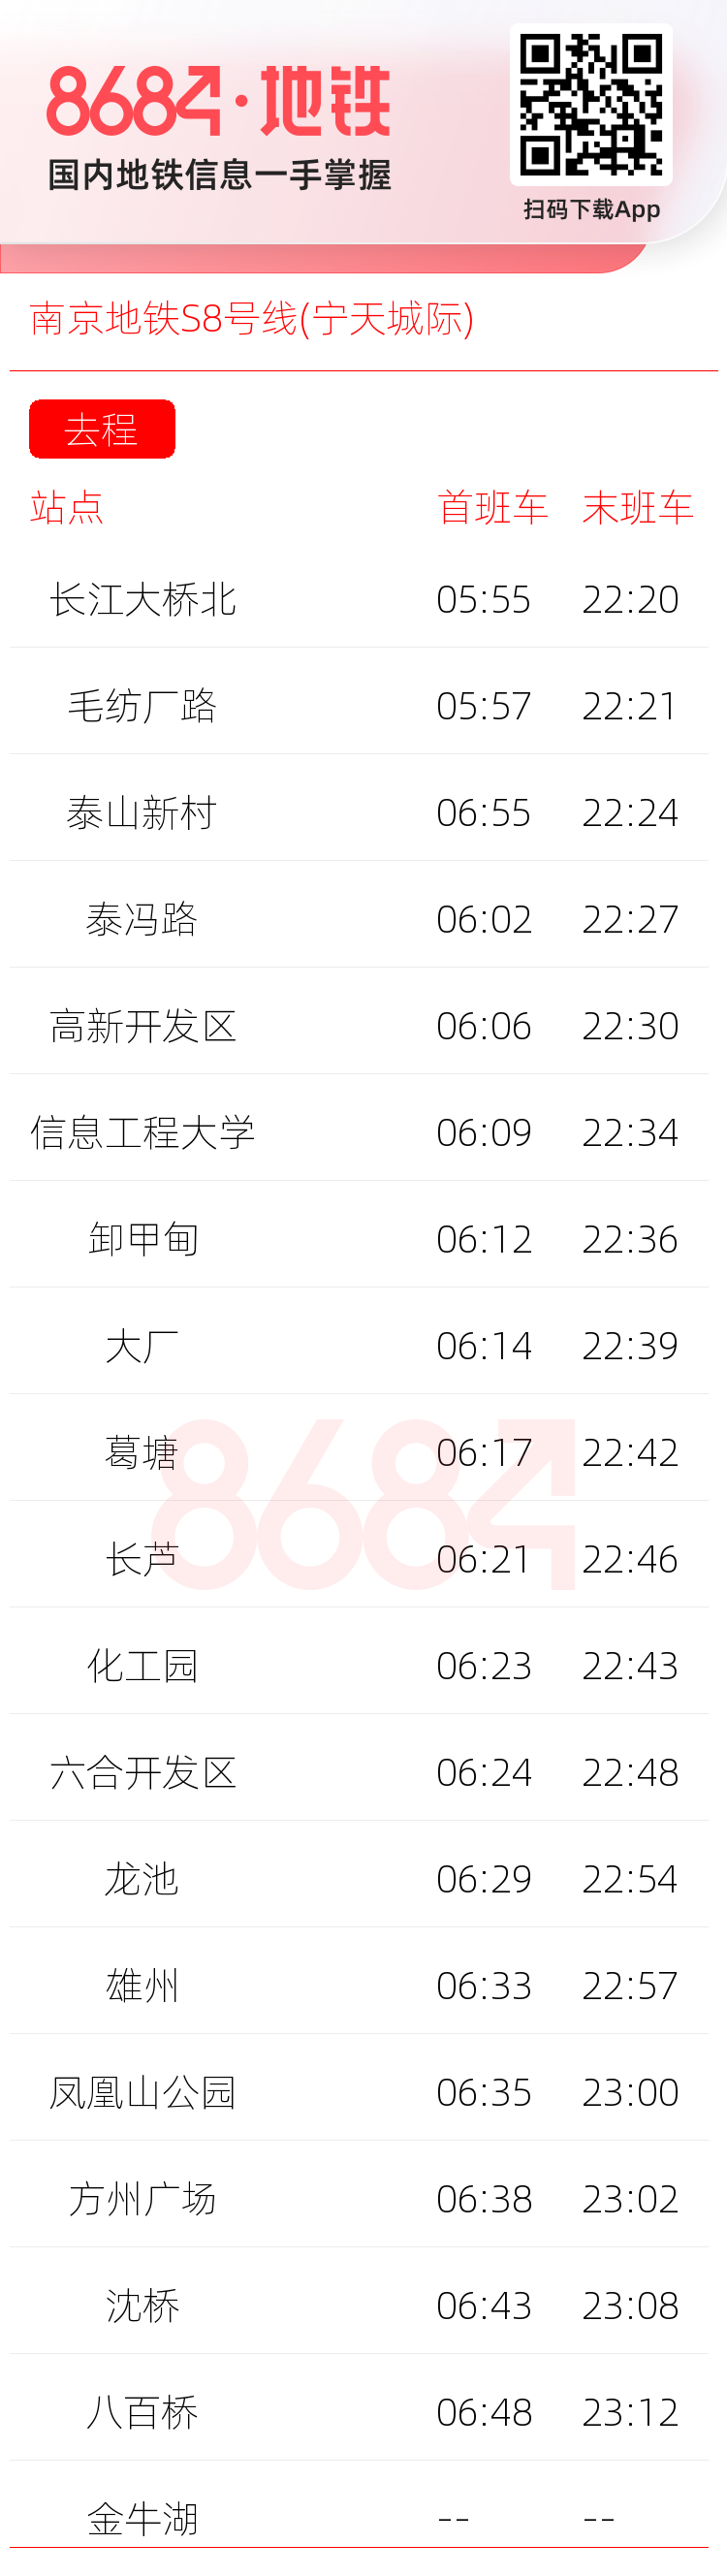 南京地铁S8号线(宁天城际)运营时间表